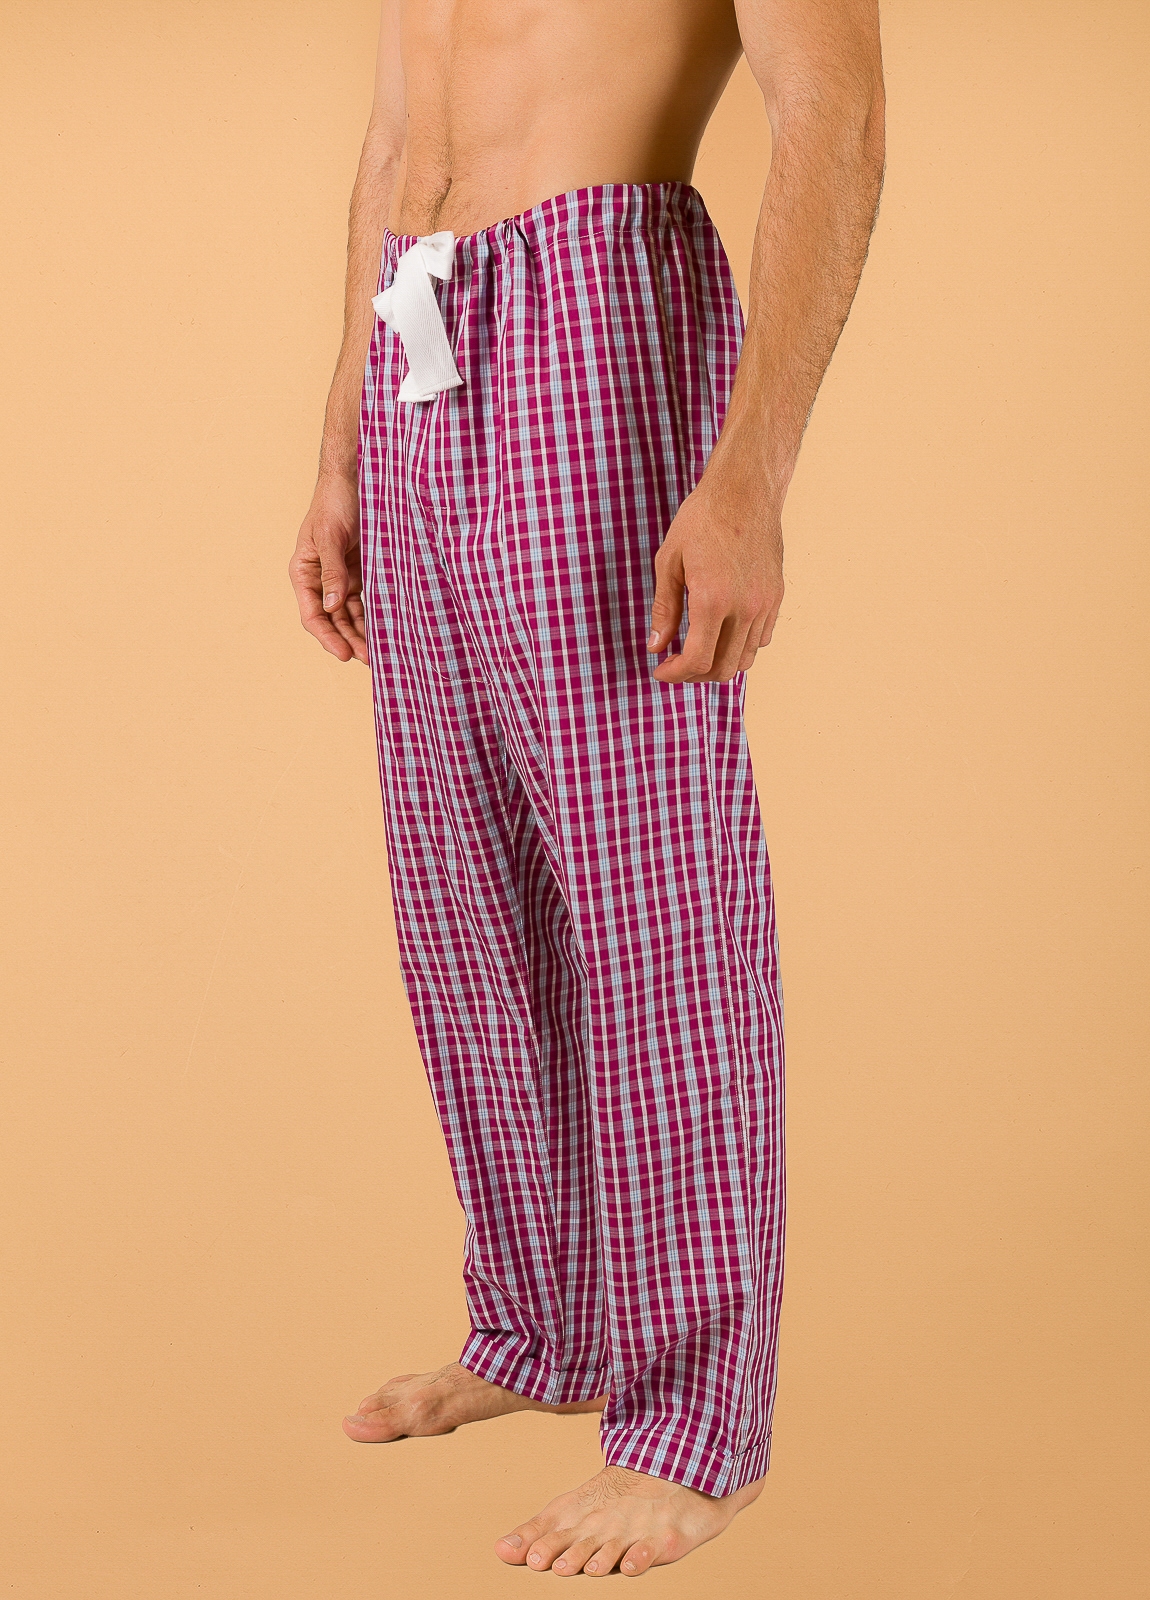 Pantalón largo de Pijama FUREST COLECCIÓN cuadros granate con funda incluida - Ítem1